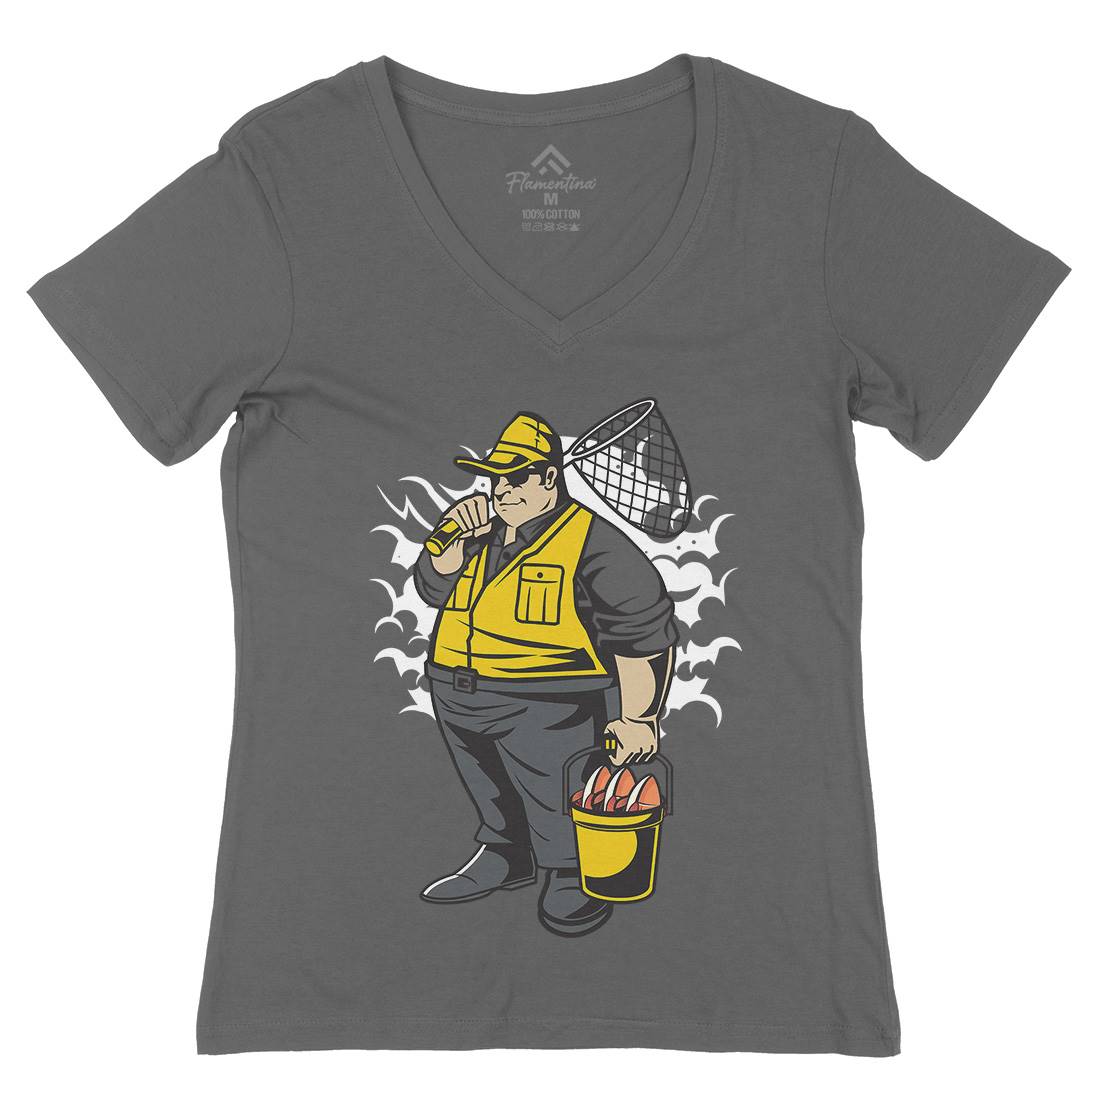 Fat Fisherman Womens Organic V-Neck T-Shirt Fishing C354